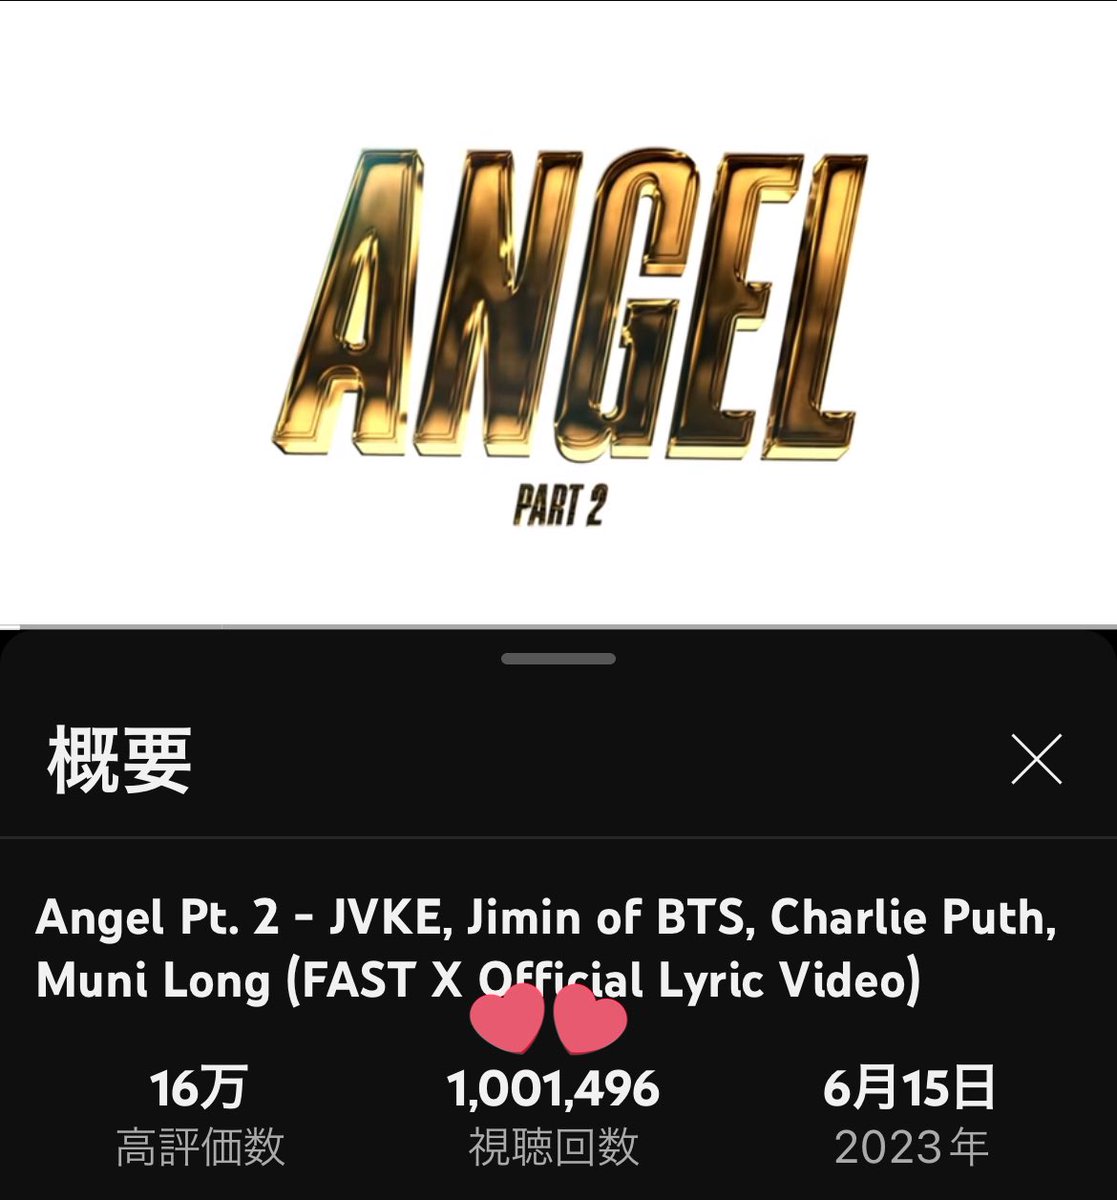 Angel Pt. 2 (Lyric Video)が100万回再生を超えました✨

ジミンちゃんおめでとうございます🎊

ミュス中のスクショとタグリプでお祝いしましょう🥂

🔗youtu.be/V3UVnMBKnpI

#Angel_Pt2 
#FASTXxJIMIN
#ジミンちゃん